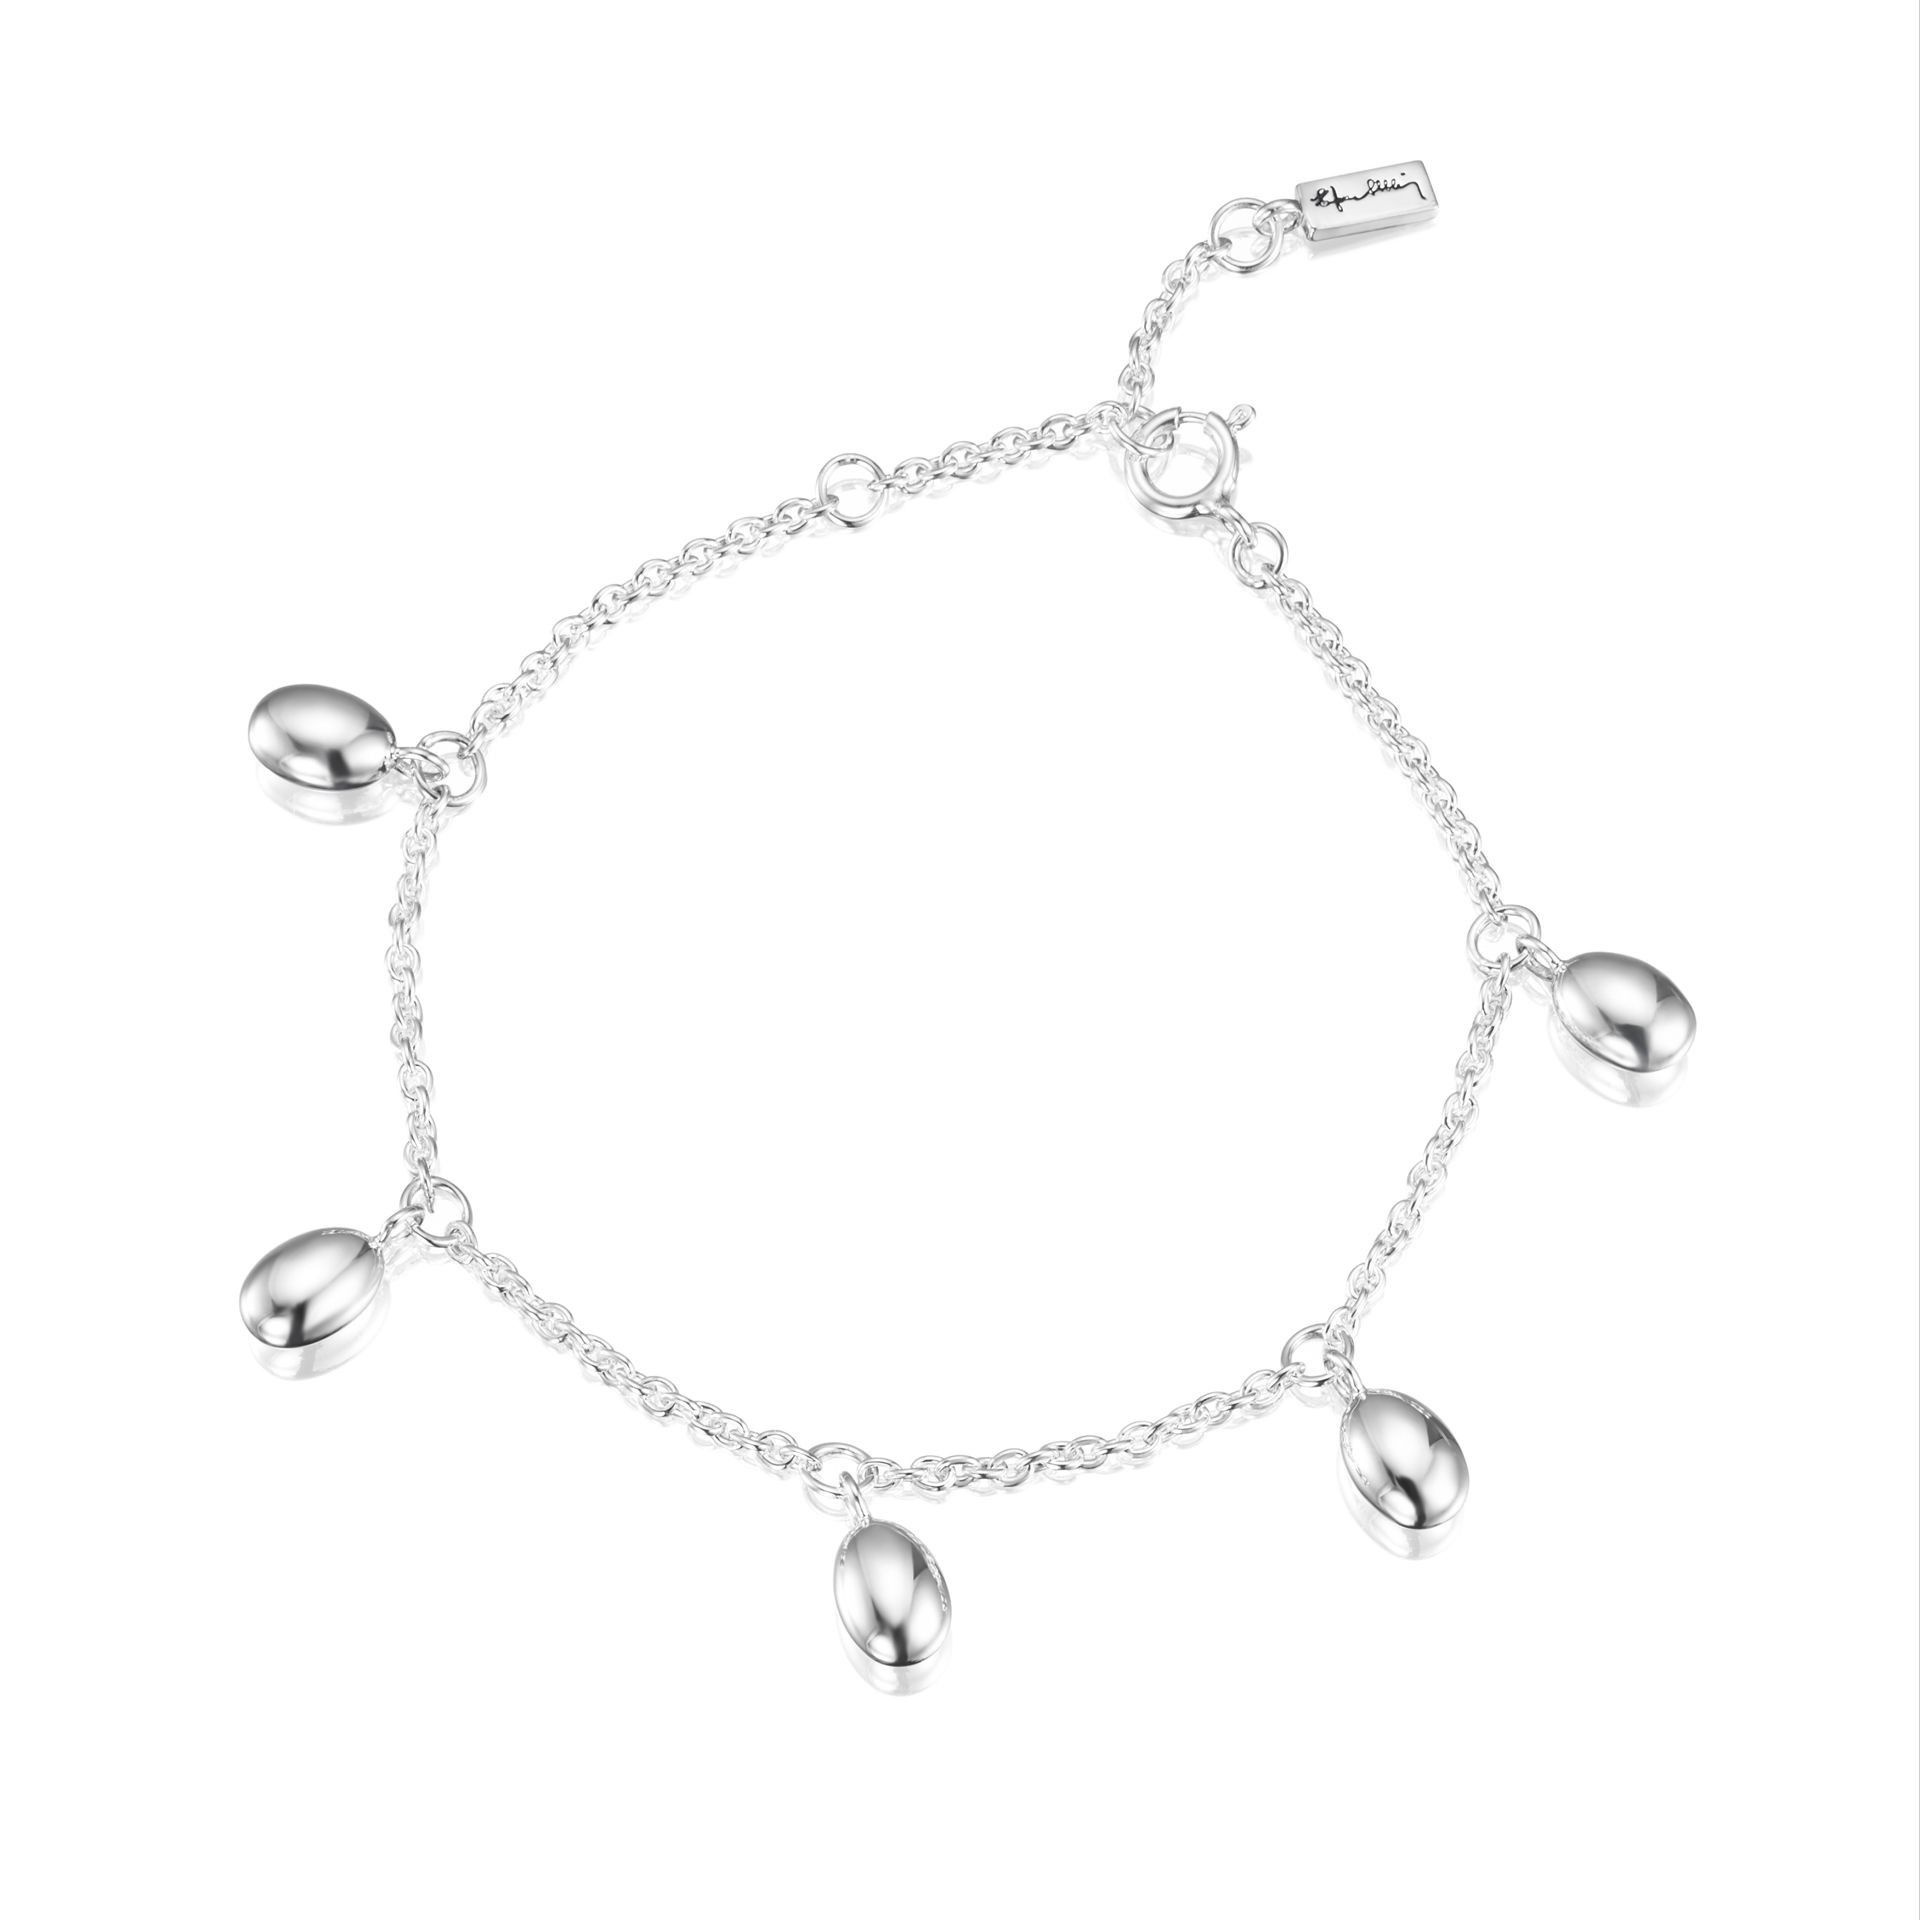 Efva Attling Love Beads Plain Bracelet 16/17.5/19 CM - SILVER